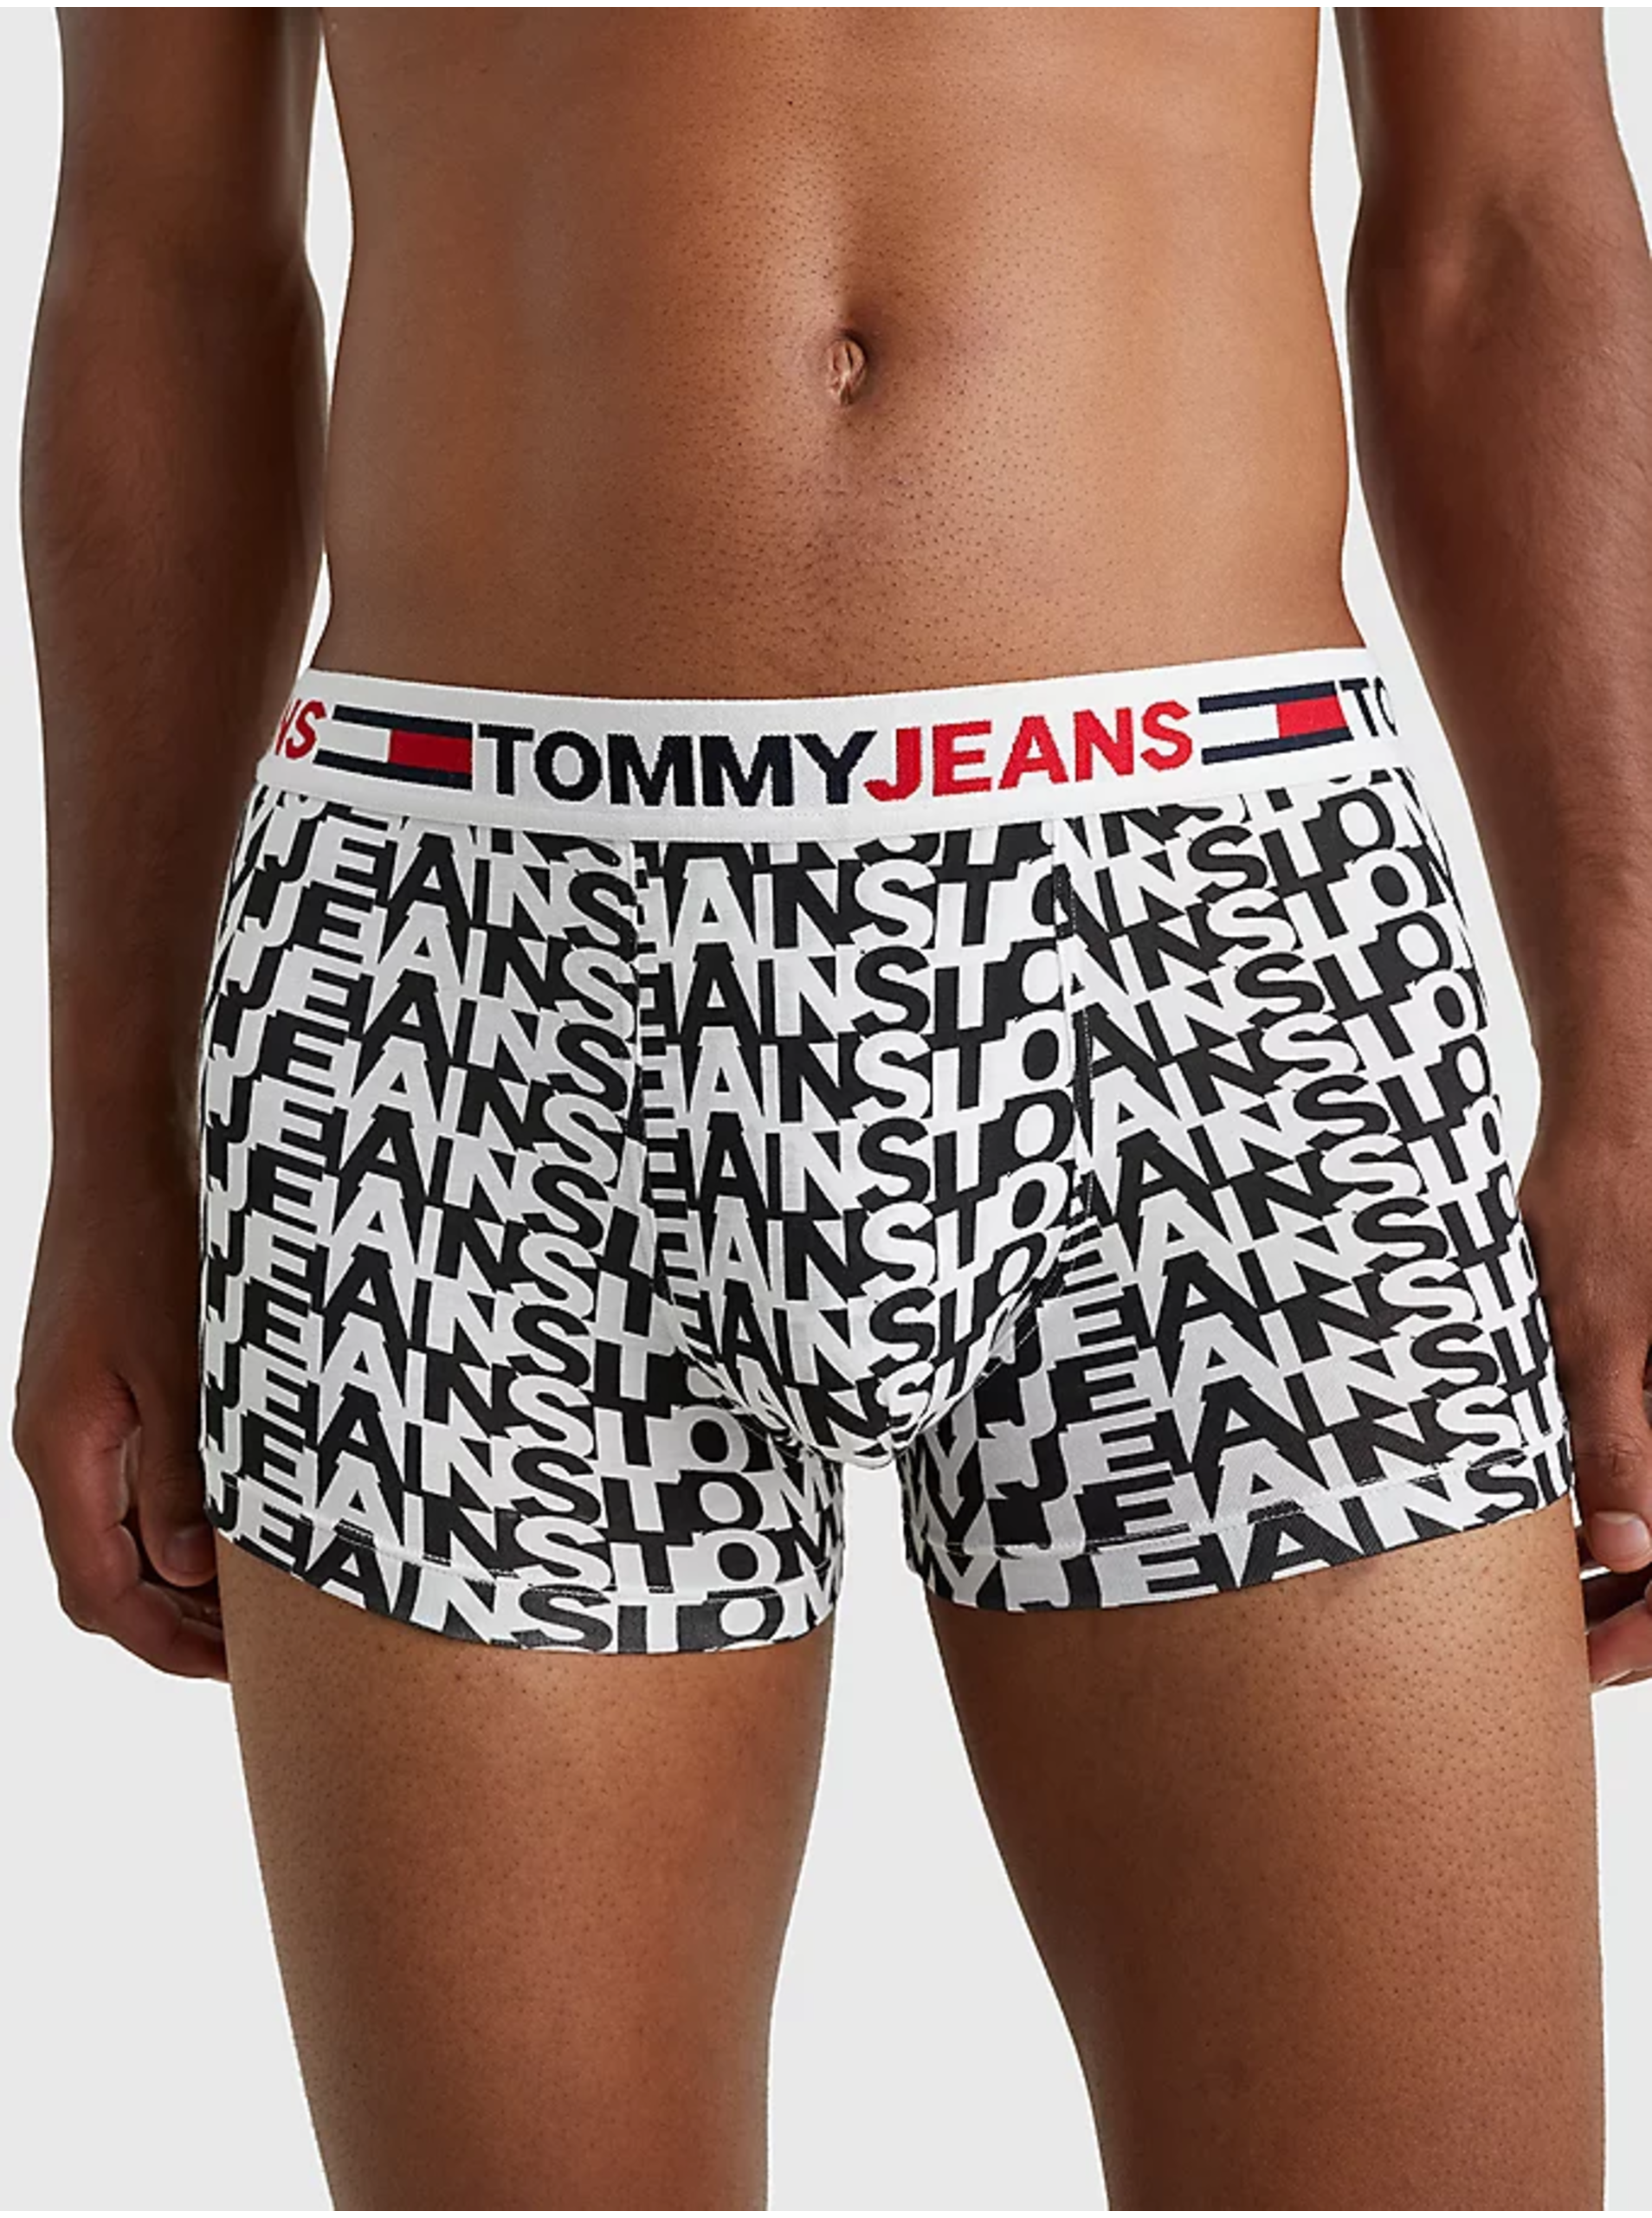 Lacno Boxerky pre mužov Tommy Jeans - biela, čierna